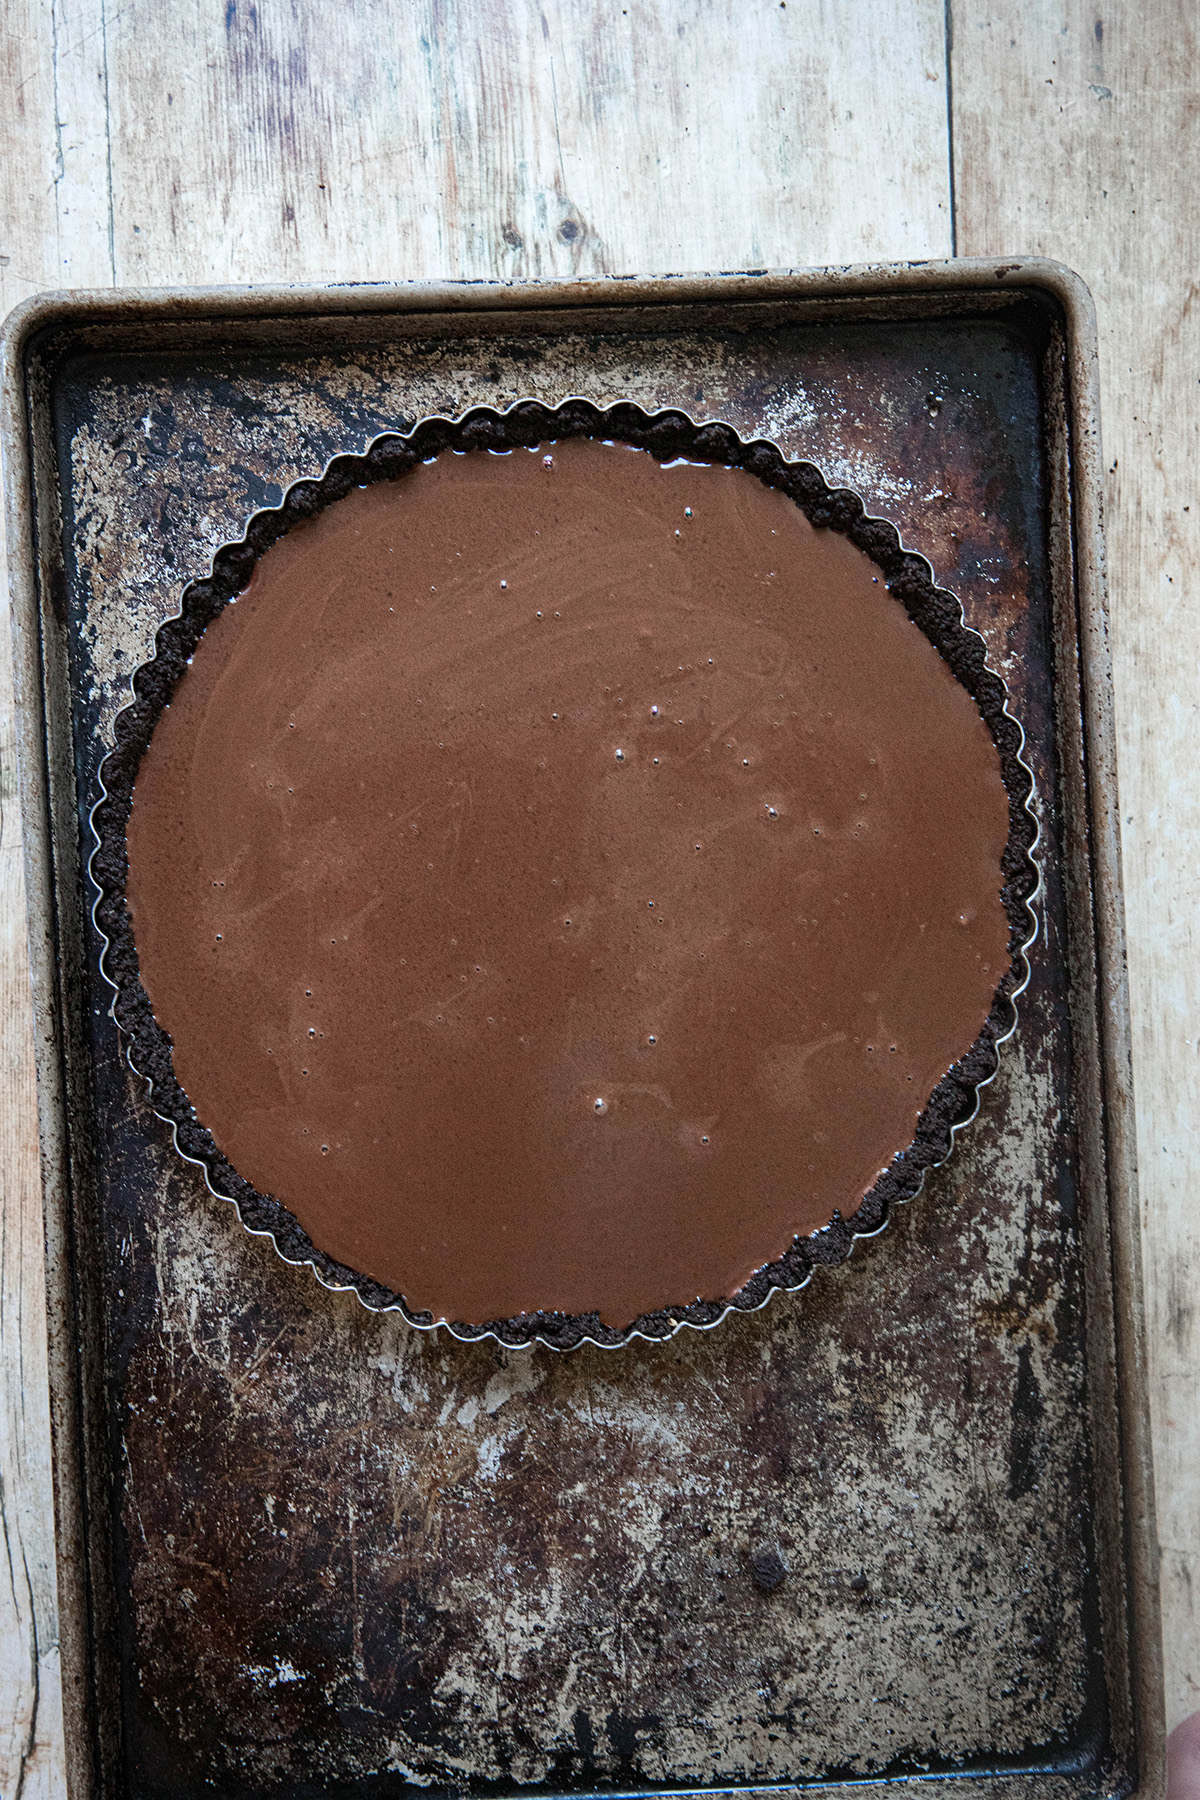 chocolate tart on a baking sheet